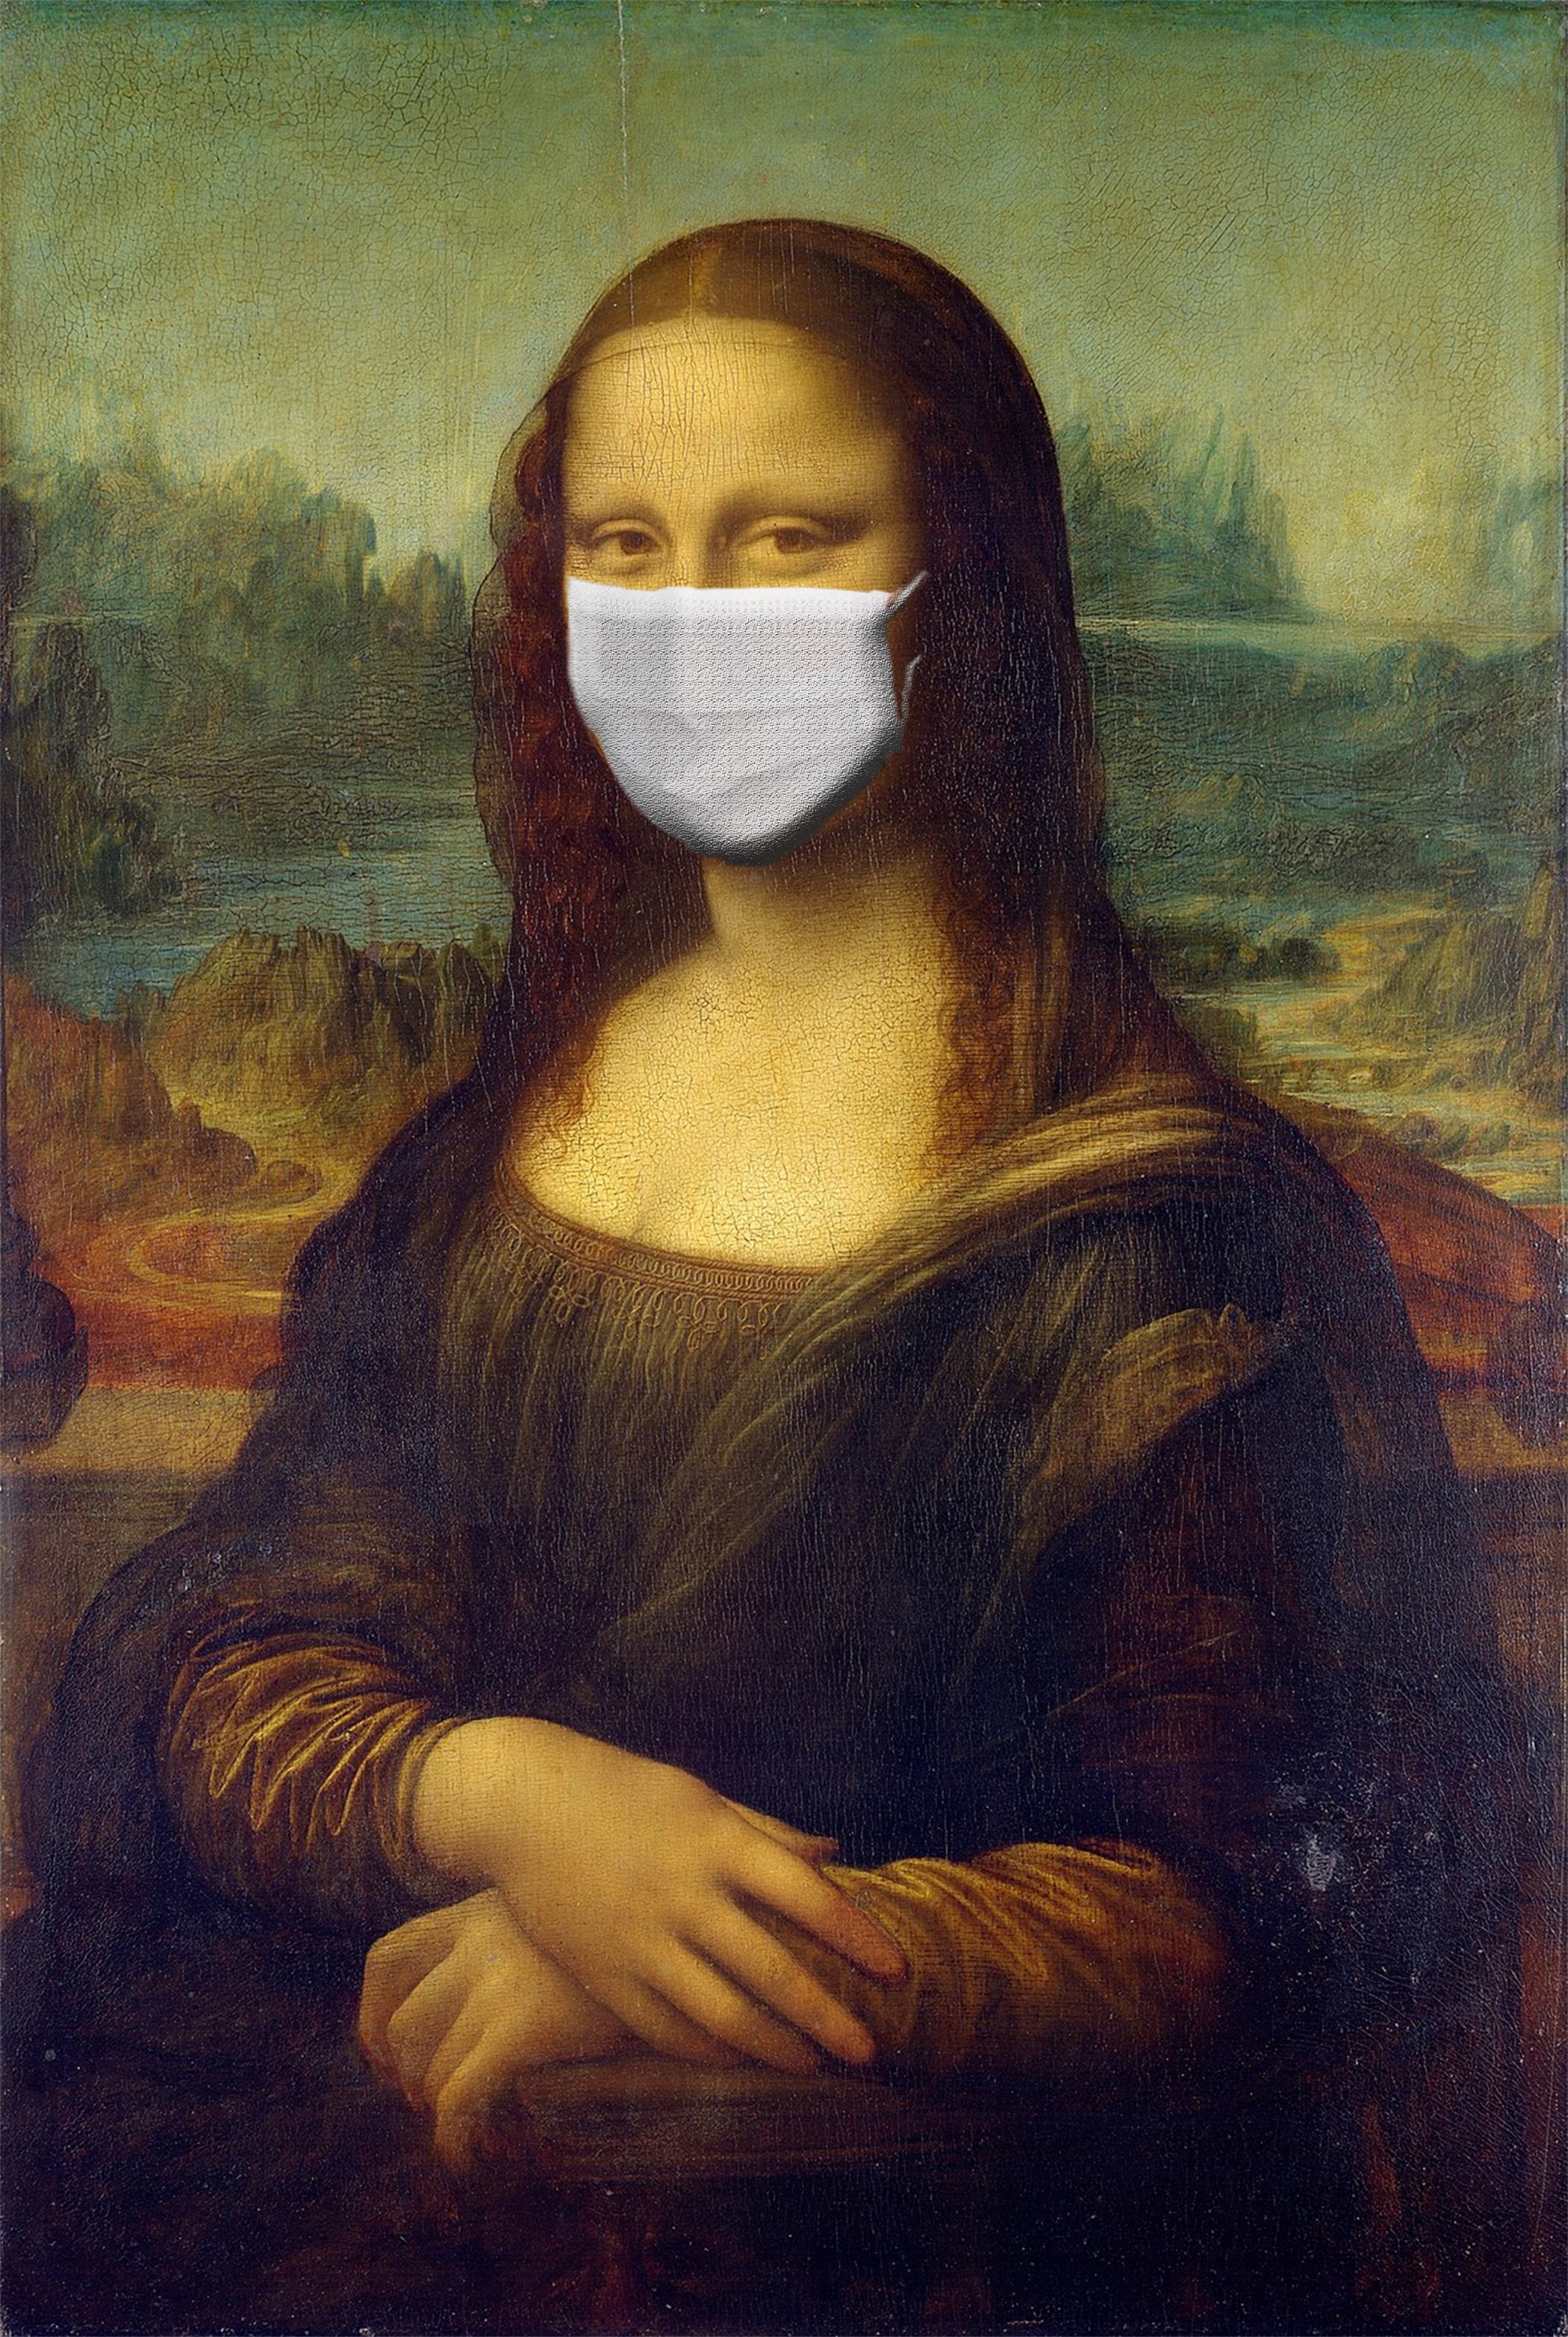 Porträt von Mona Lisa mit Maske